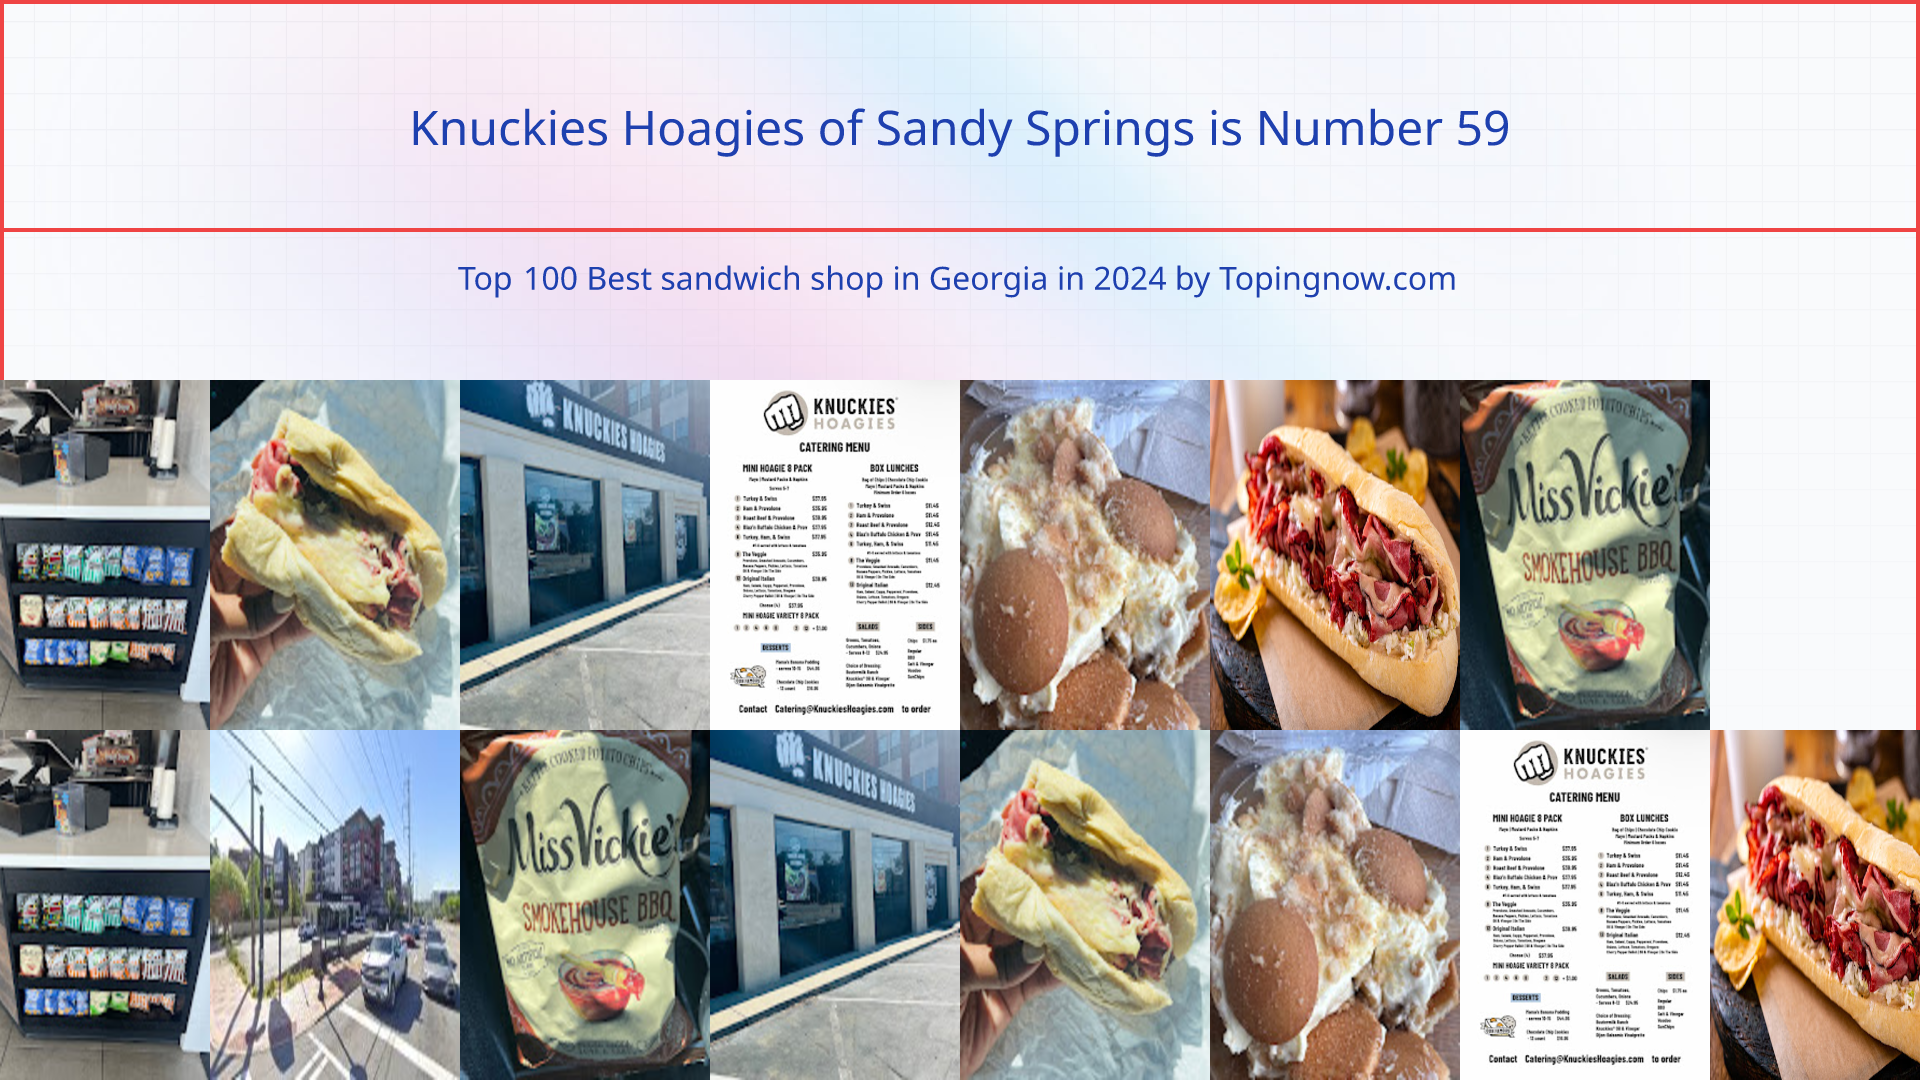 Knuckies Hoagies of Sandy Springs: Top 100 Best sandwich shop in Georgia in 2024